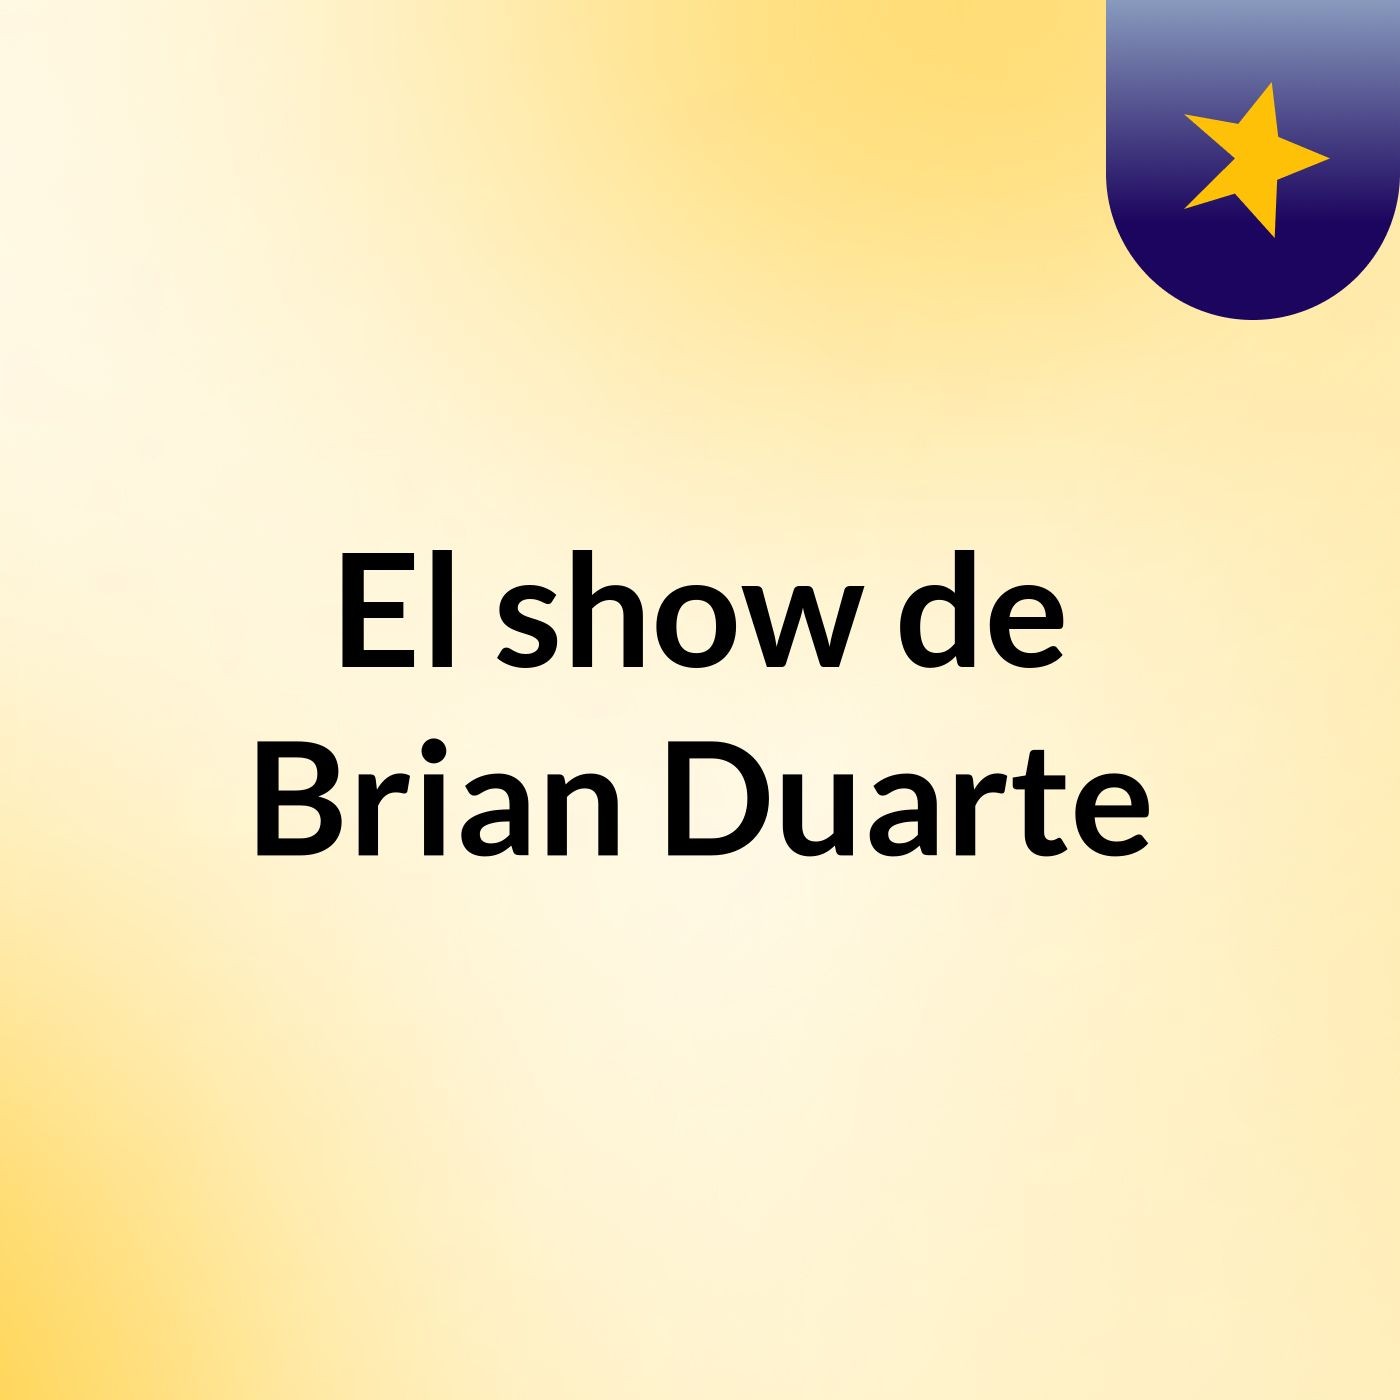 El show de Brian Duarte